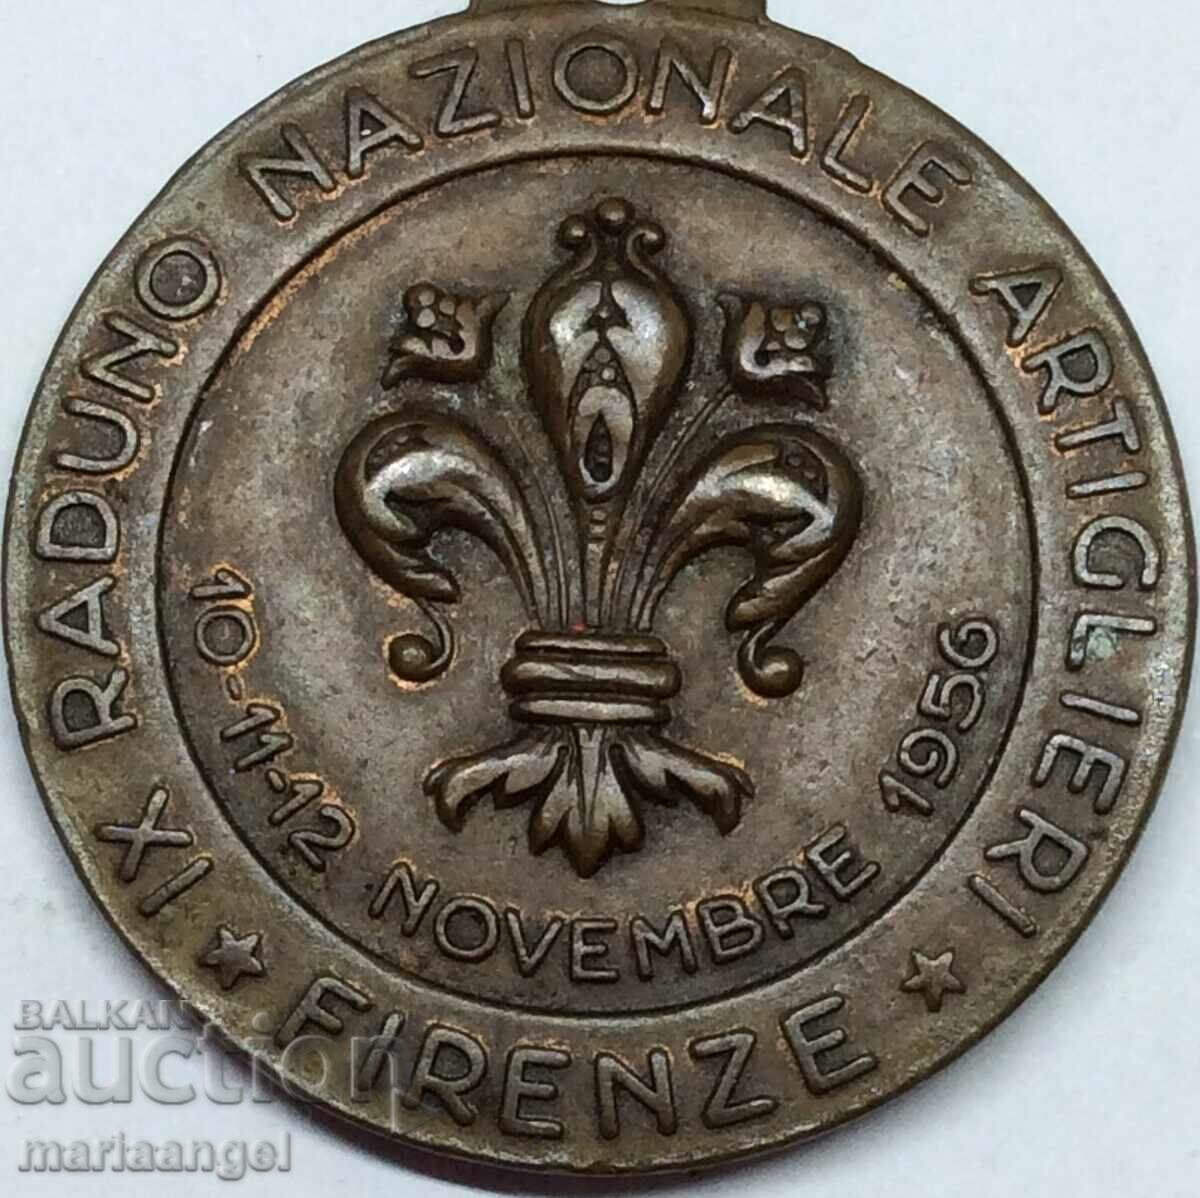 Ιταλία 1956 Μετάλλιο «Εθνικό Συνέδριο Πυροβολικού» 30 χλστ